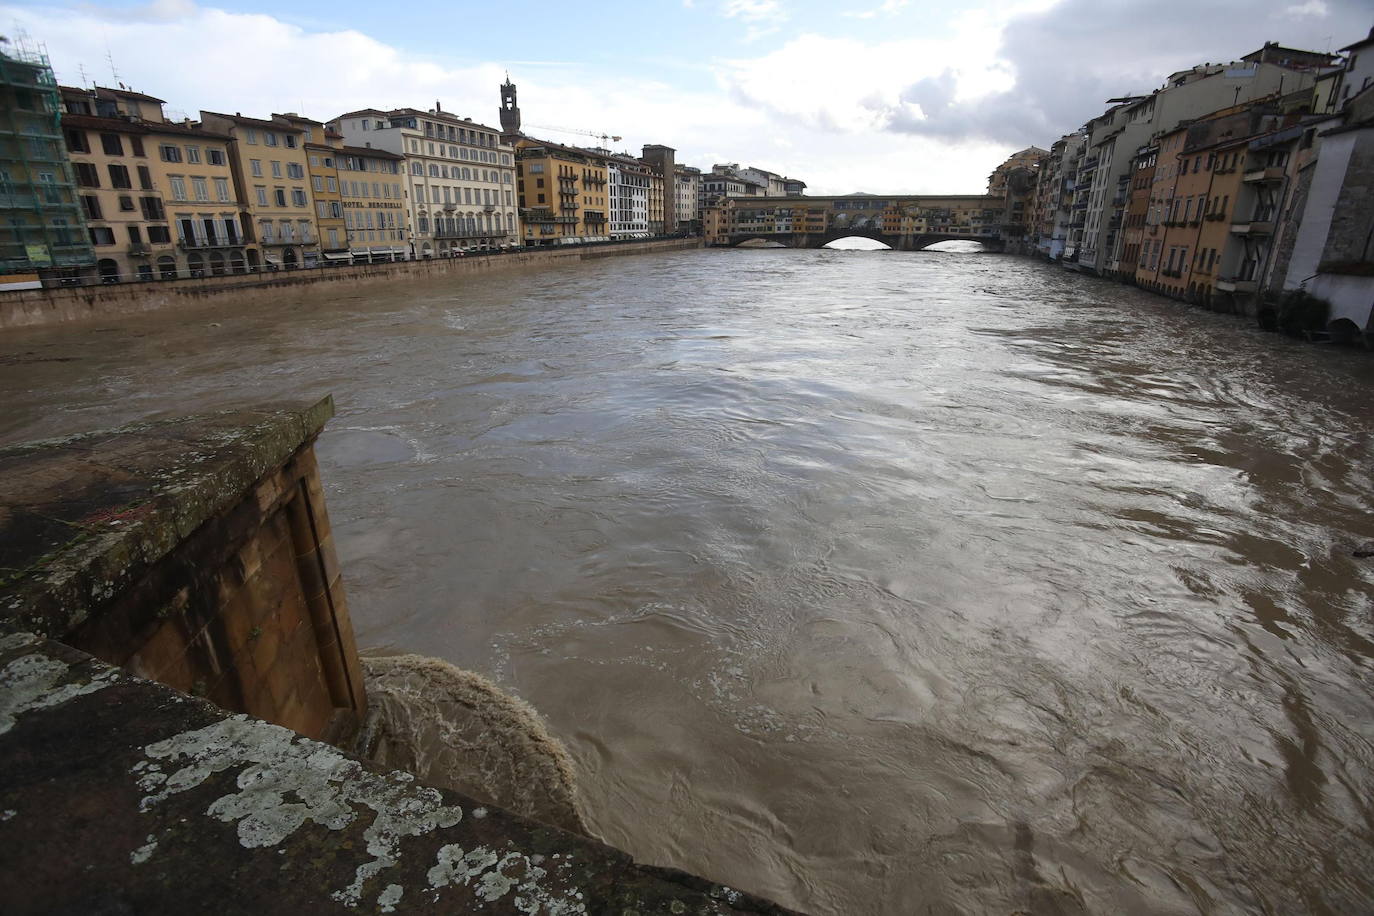 Fotos: Fotos de lluvias en Florencia